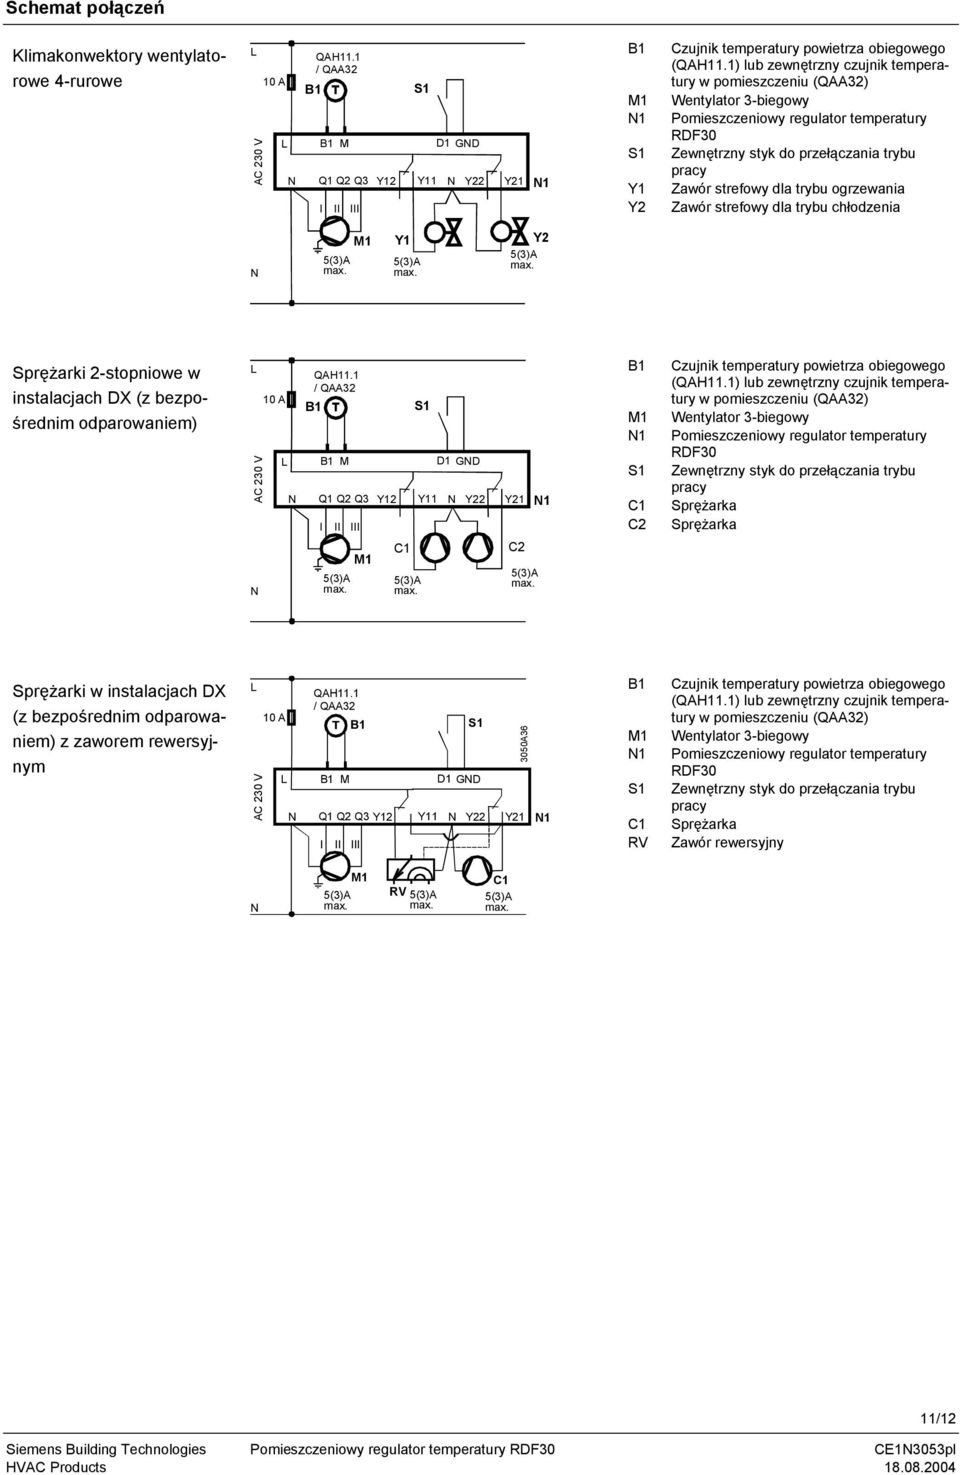 ogrzewania Zawór strefowy dla trybu chłodzenia N M Y Y2 Sprężarki 2-stopniowe w instalacjach DX (z bezpośrednim odparowaniem) L AC 230 V N 0 A QAH.